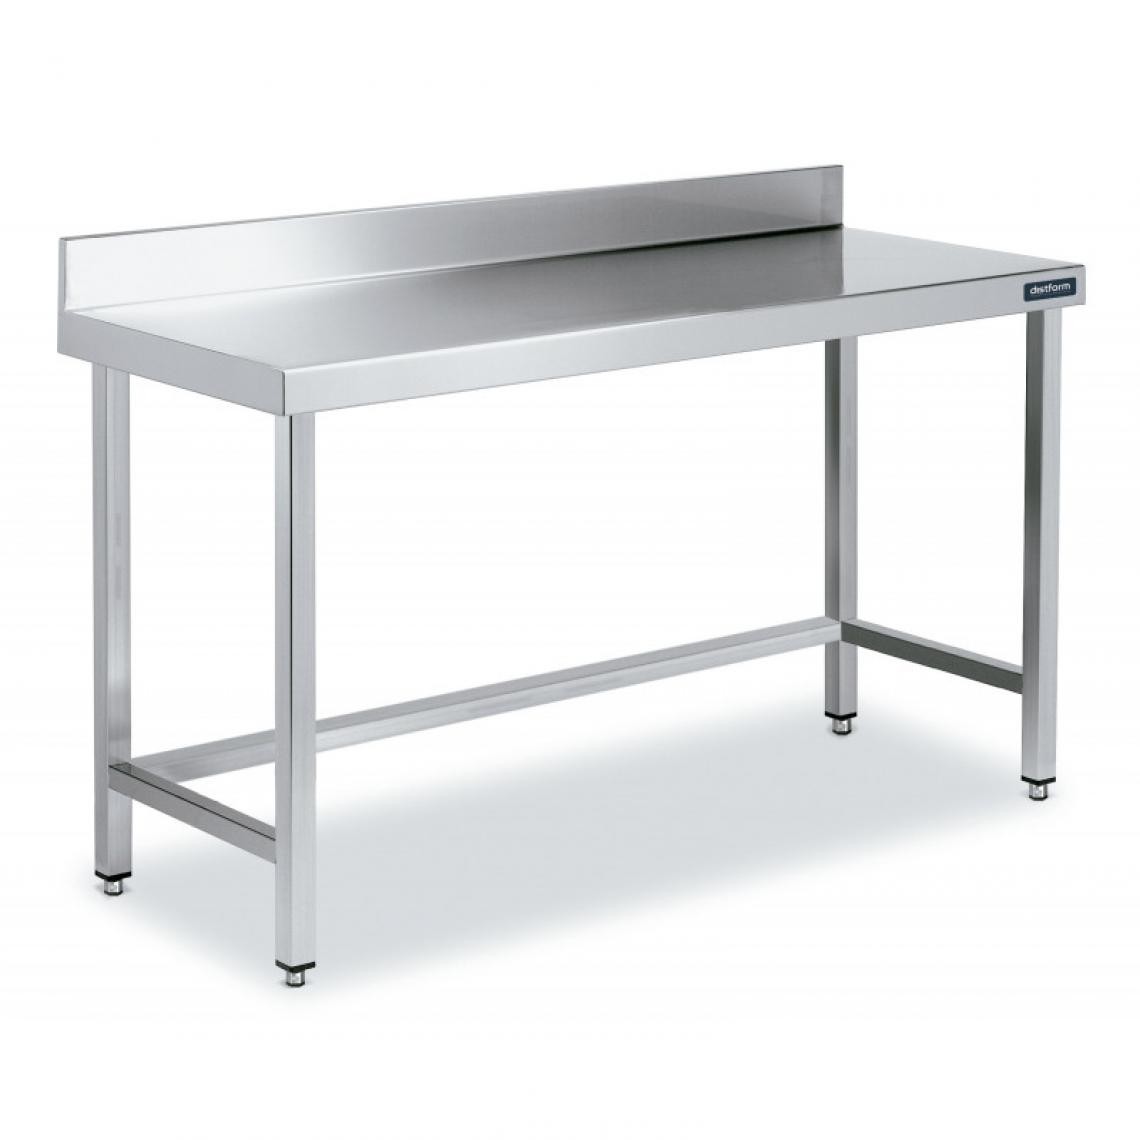 DISTFORM - Table Inox de Travail avec Dosseret Gamme 900 - Distform - Acier inoxydable1300x900 - Tables à manger